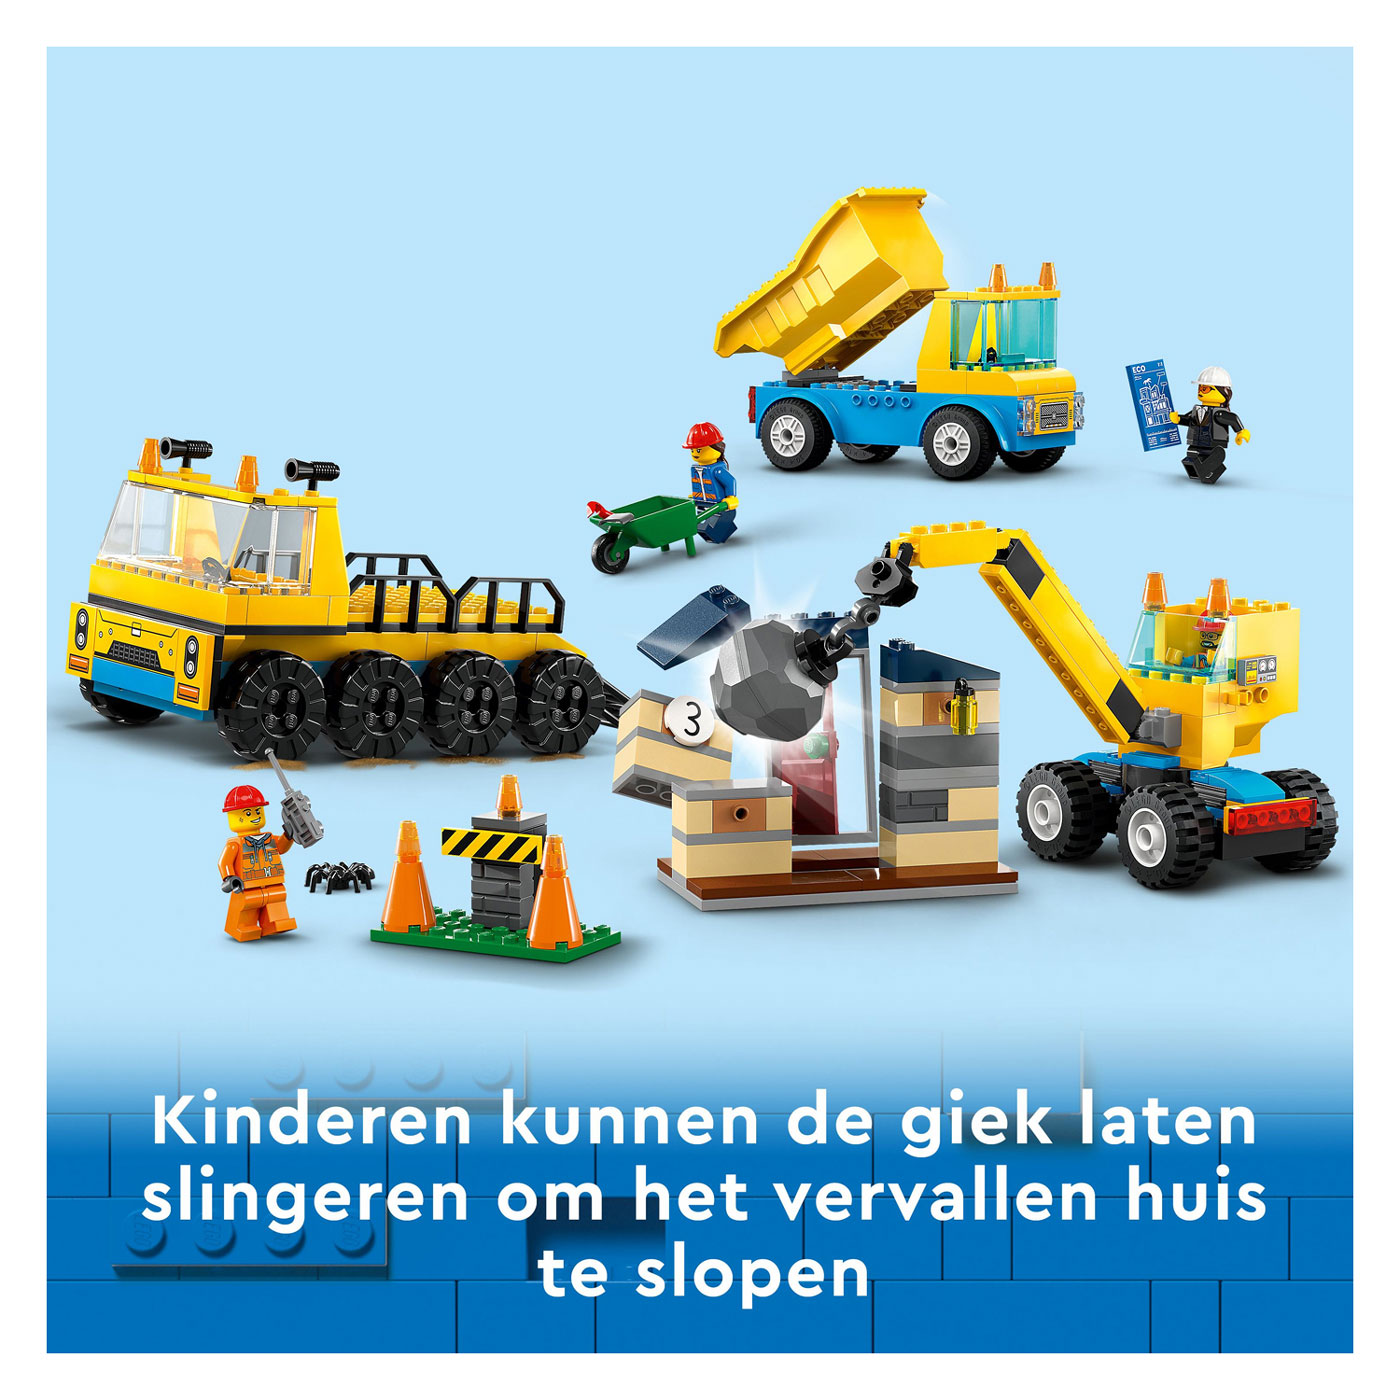 LEGO City 60391 Le camion benne, le camion de construction et la grue de démolition